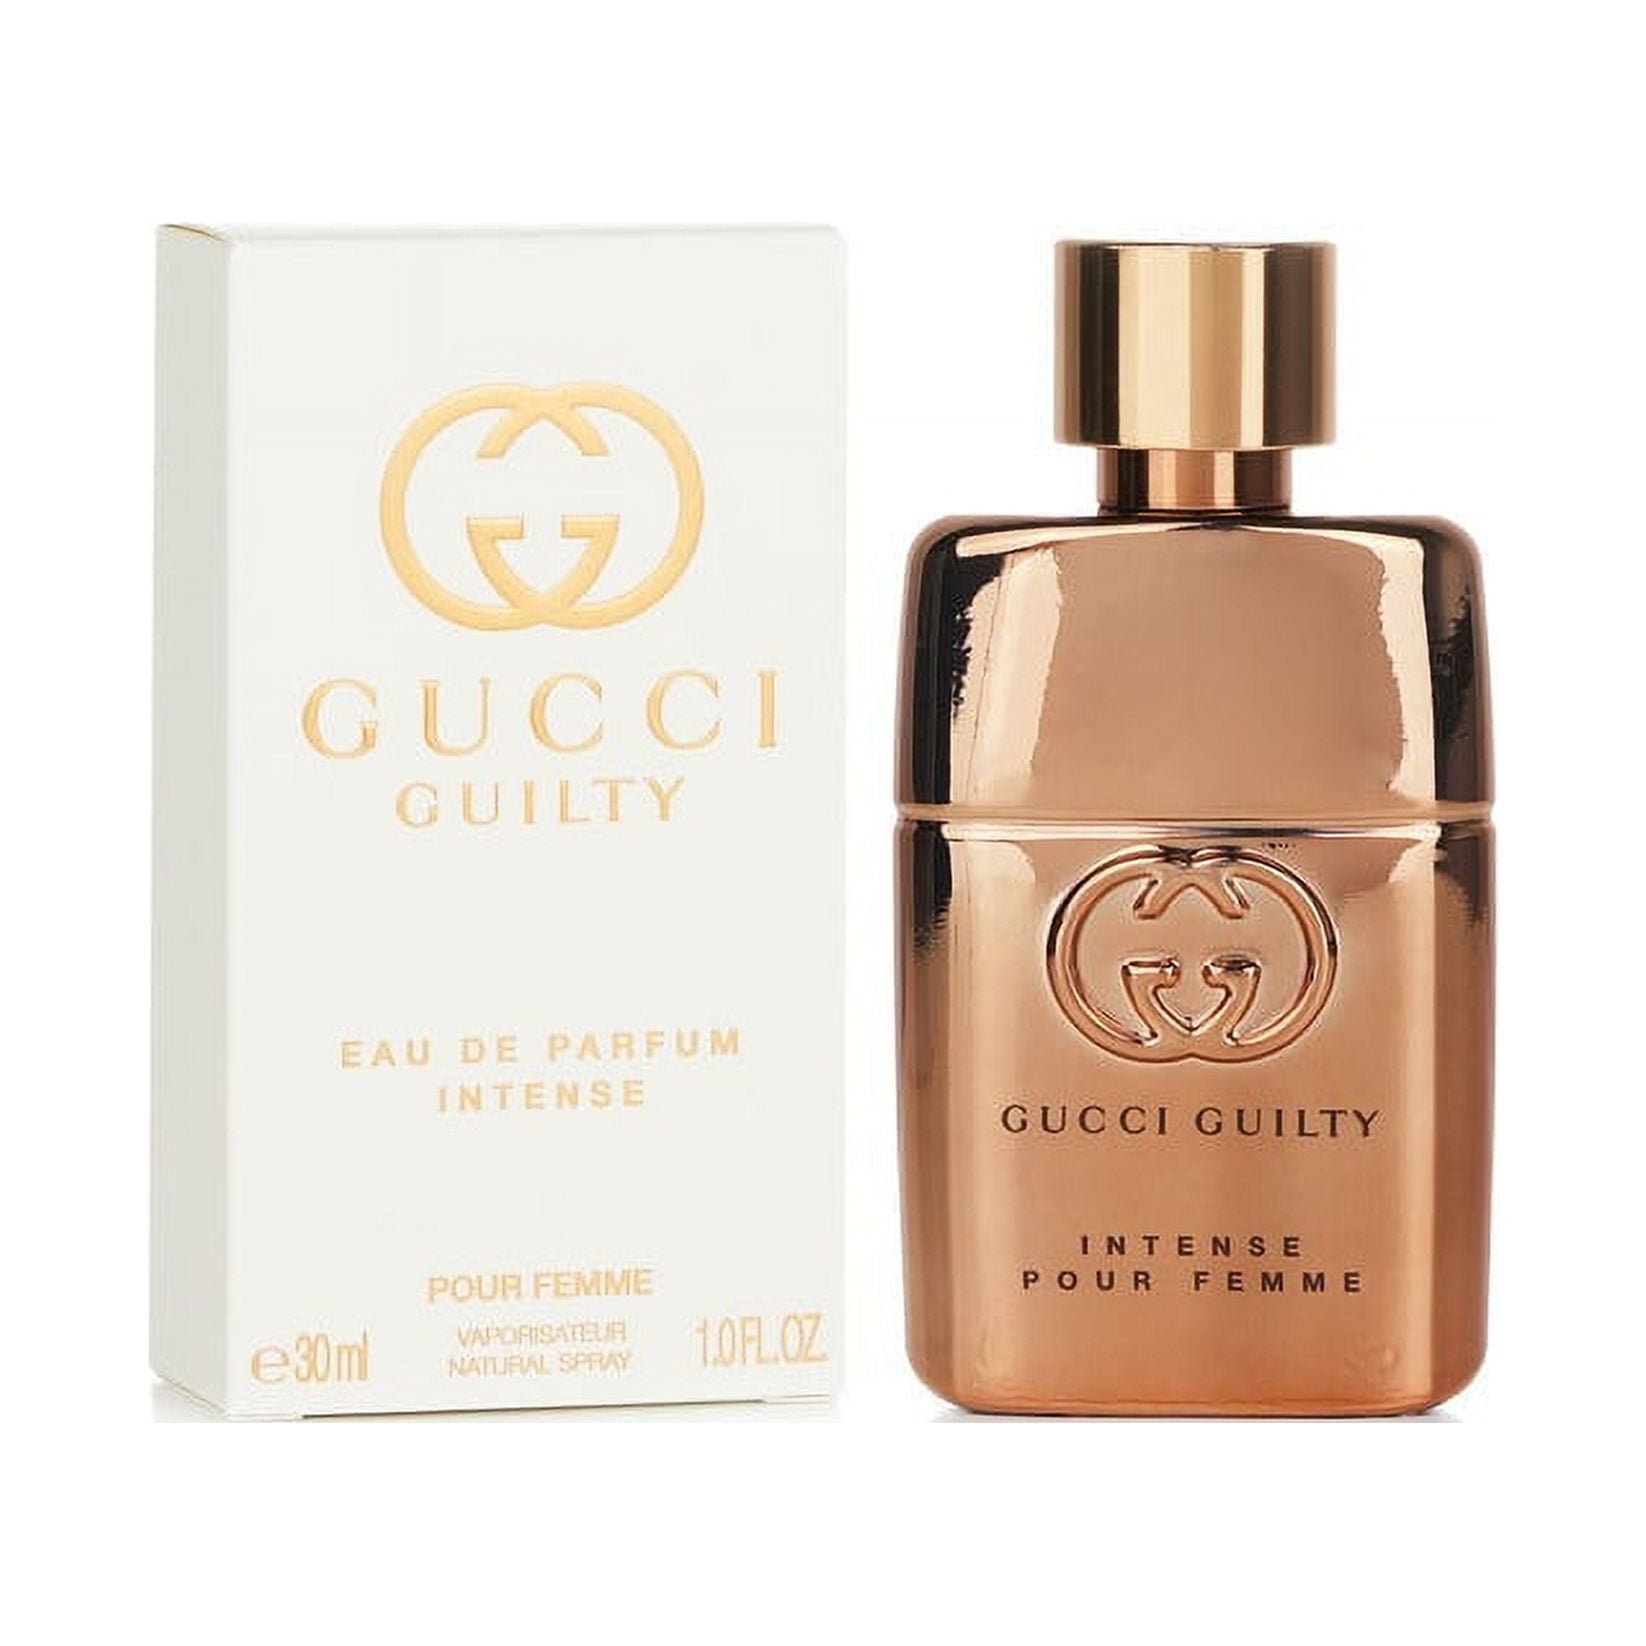 Guilty Eau de Parfum Intense Pour Femme, 3 oz.